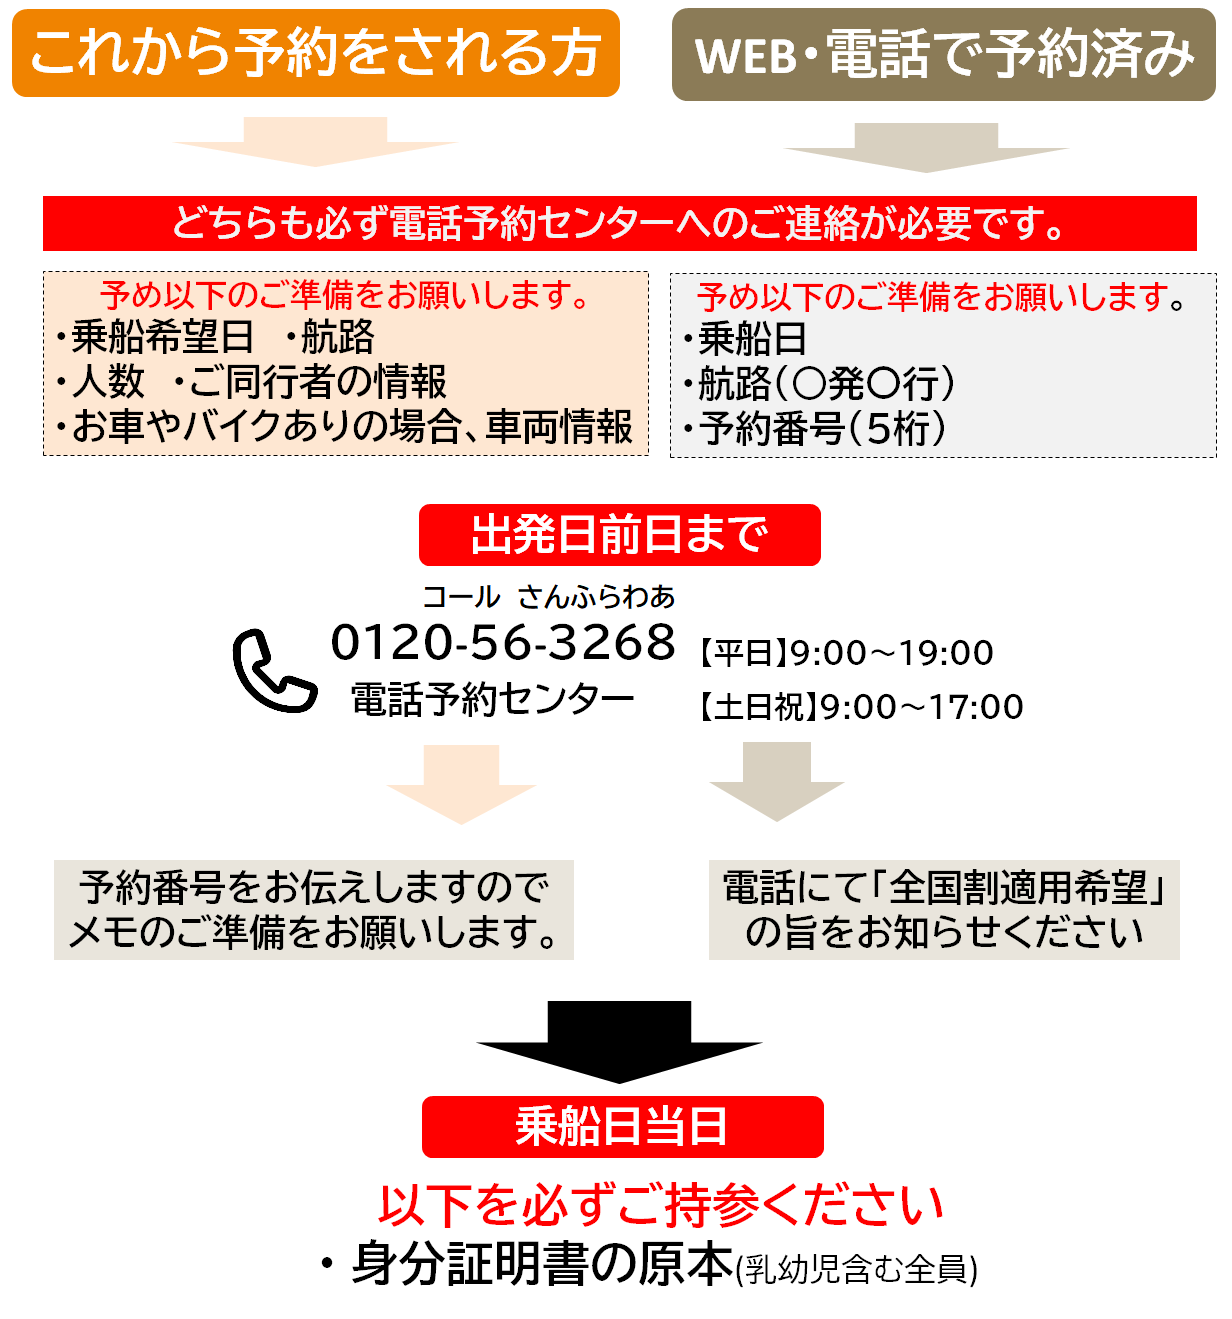 予約～発券_2 【5月8日以降】.png